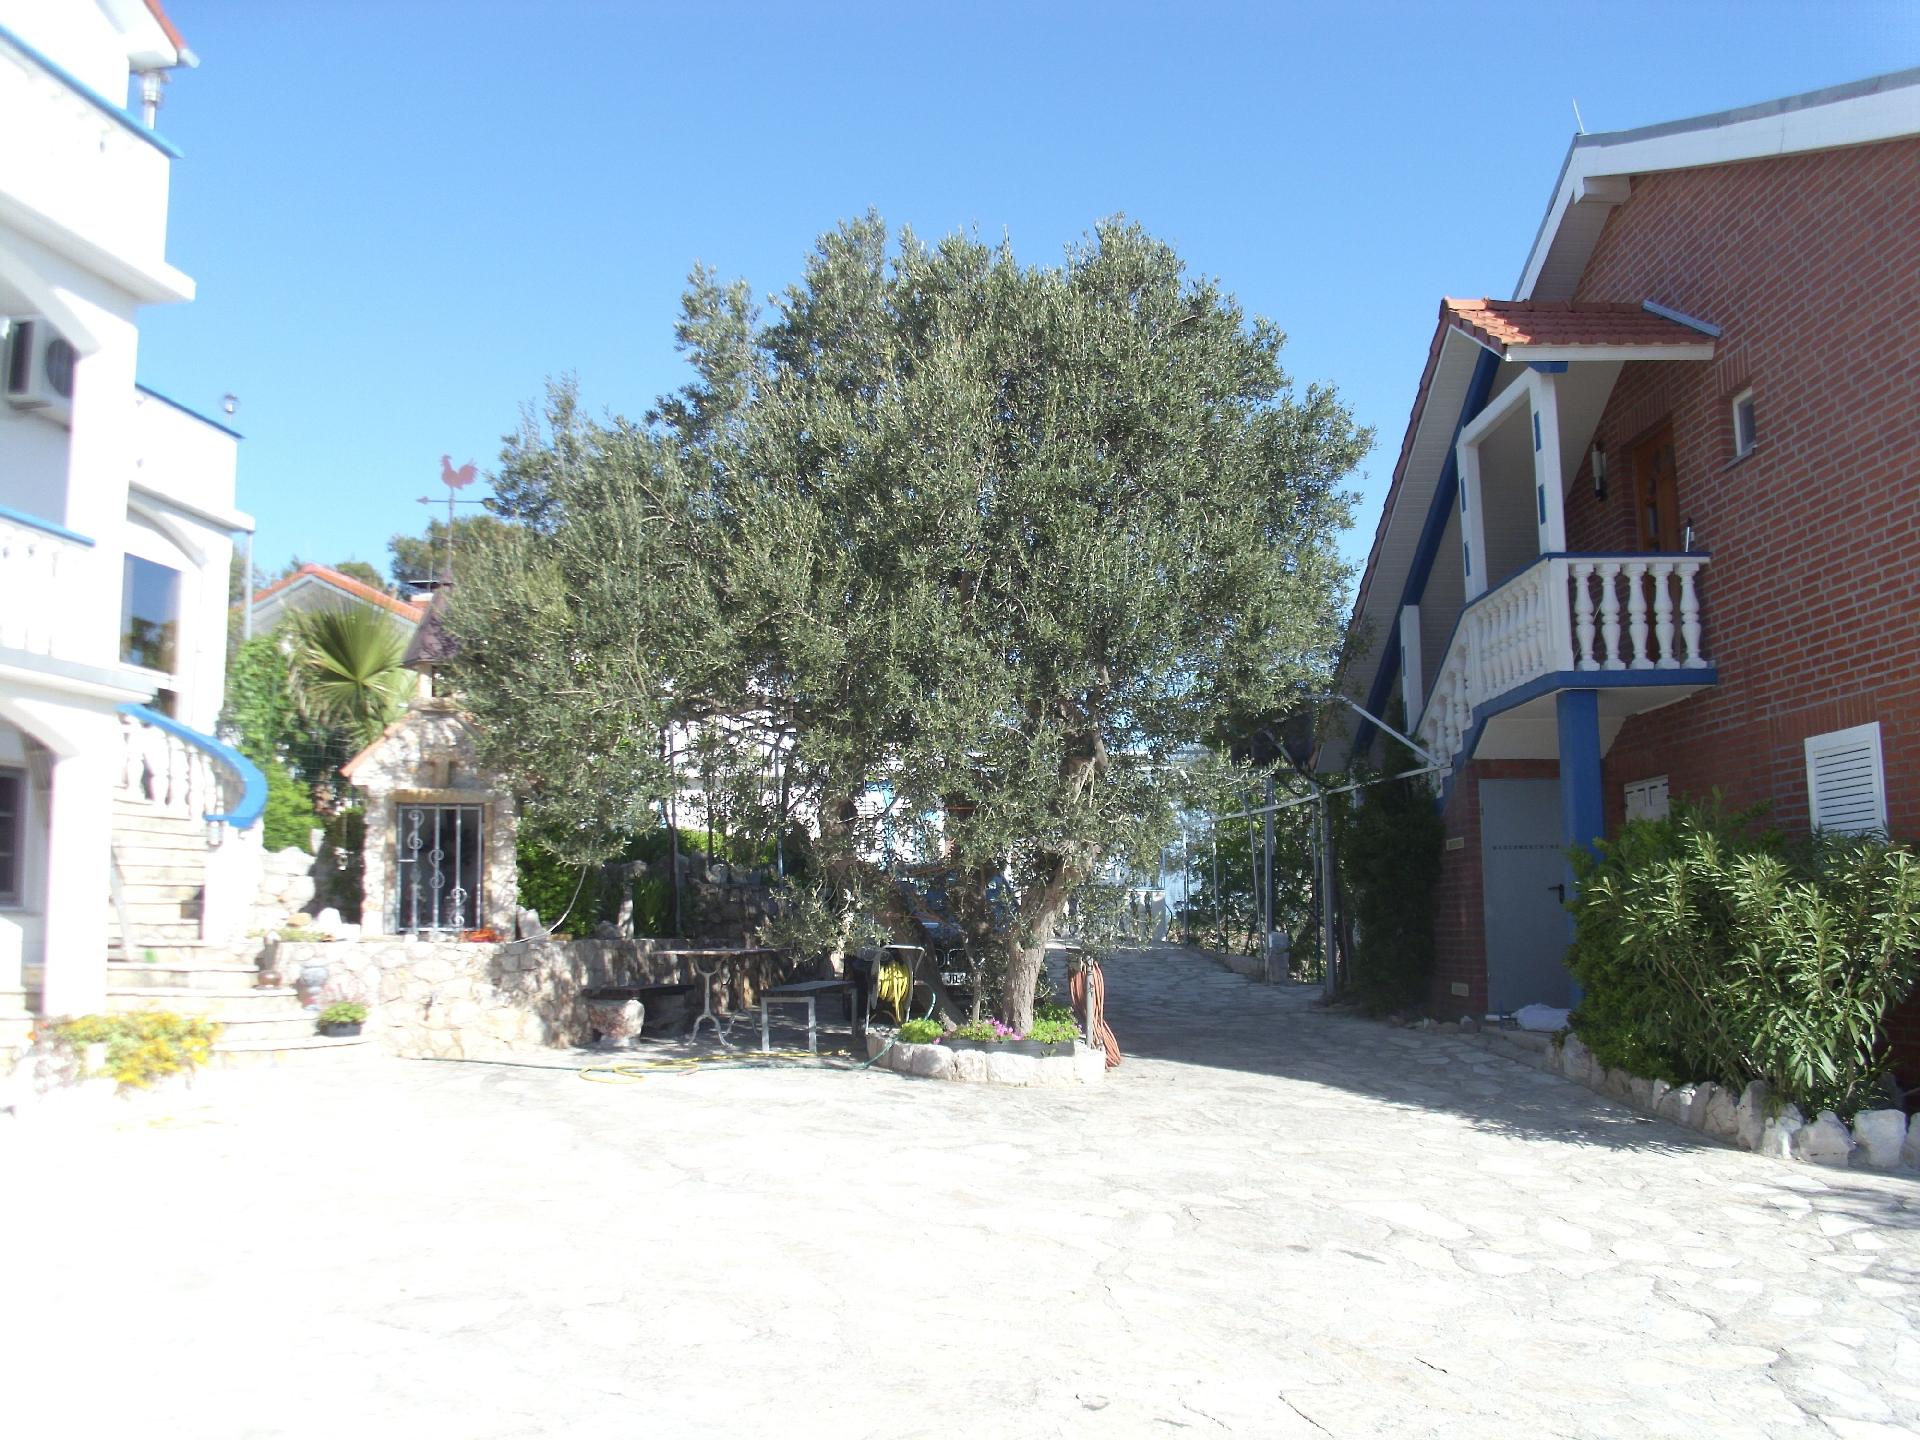 Ferienwohnung für vier Personen mit Terrasse  Ferienhaus in Dalmatien